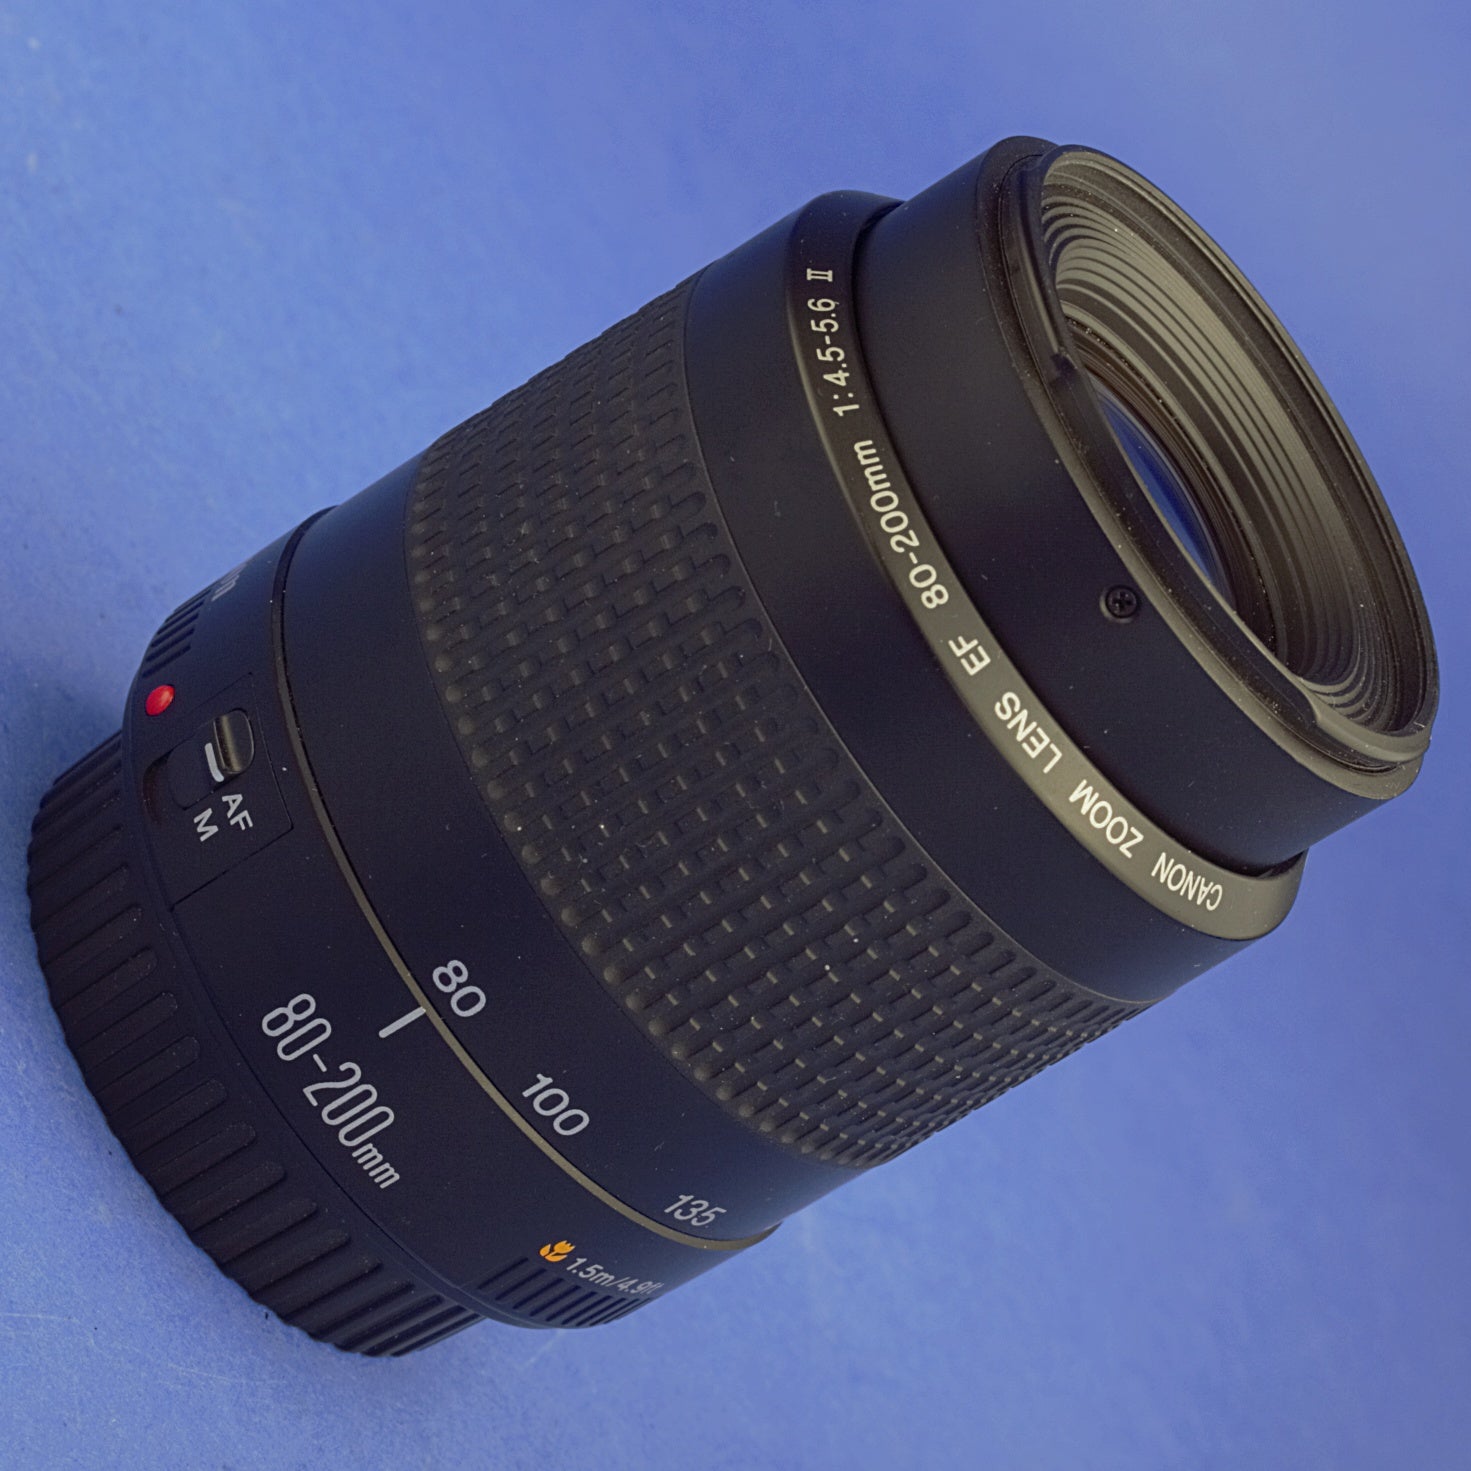 Canon EF 80-200mm 4.5-5.6 II Lens